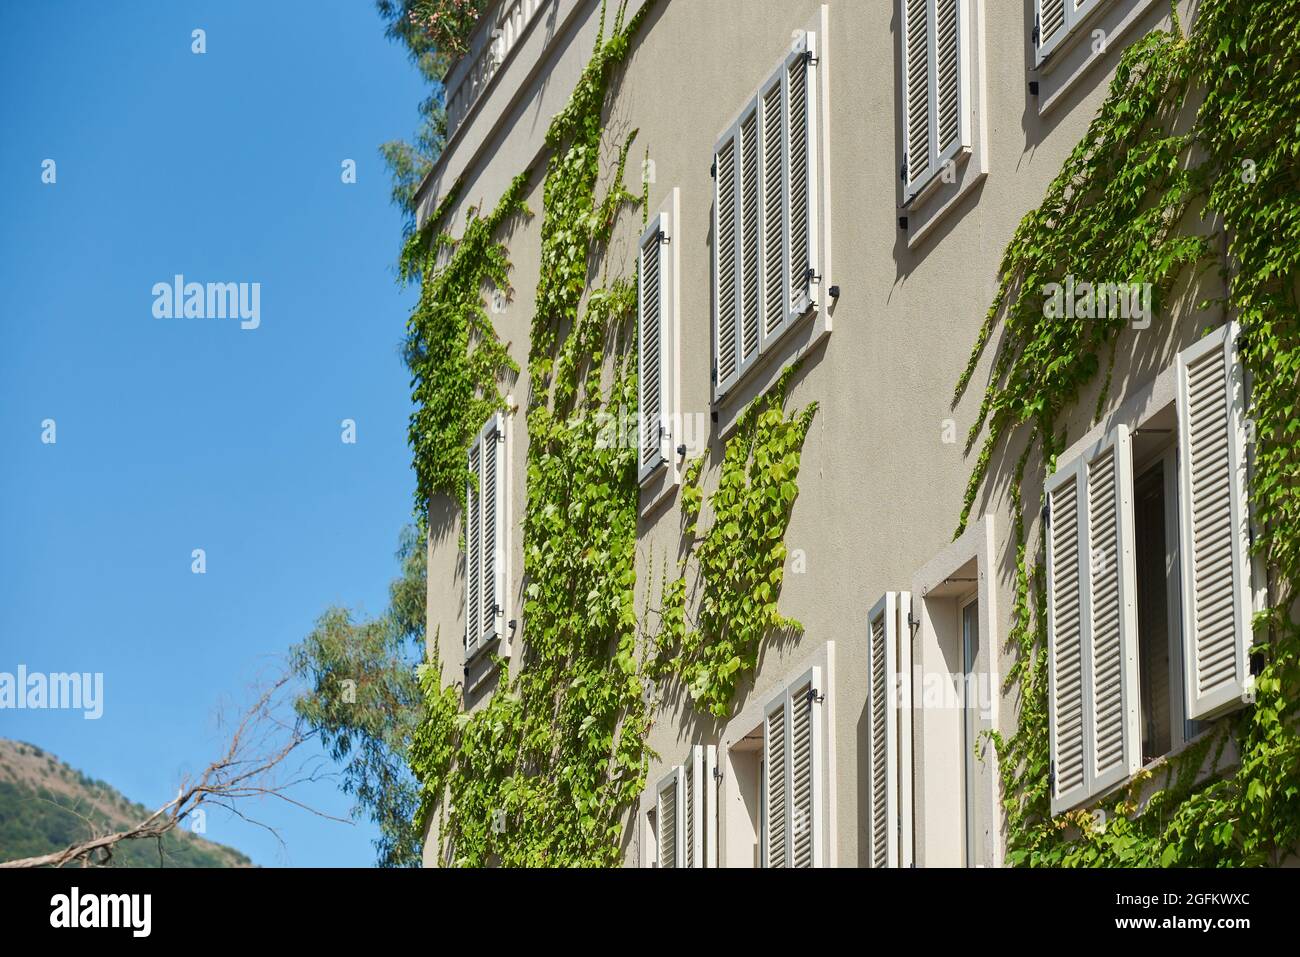 La pianta di arrampicata cresce lungo il muro con le finestre di un edificio residenziale Foto Stock